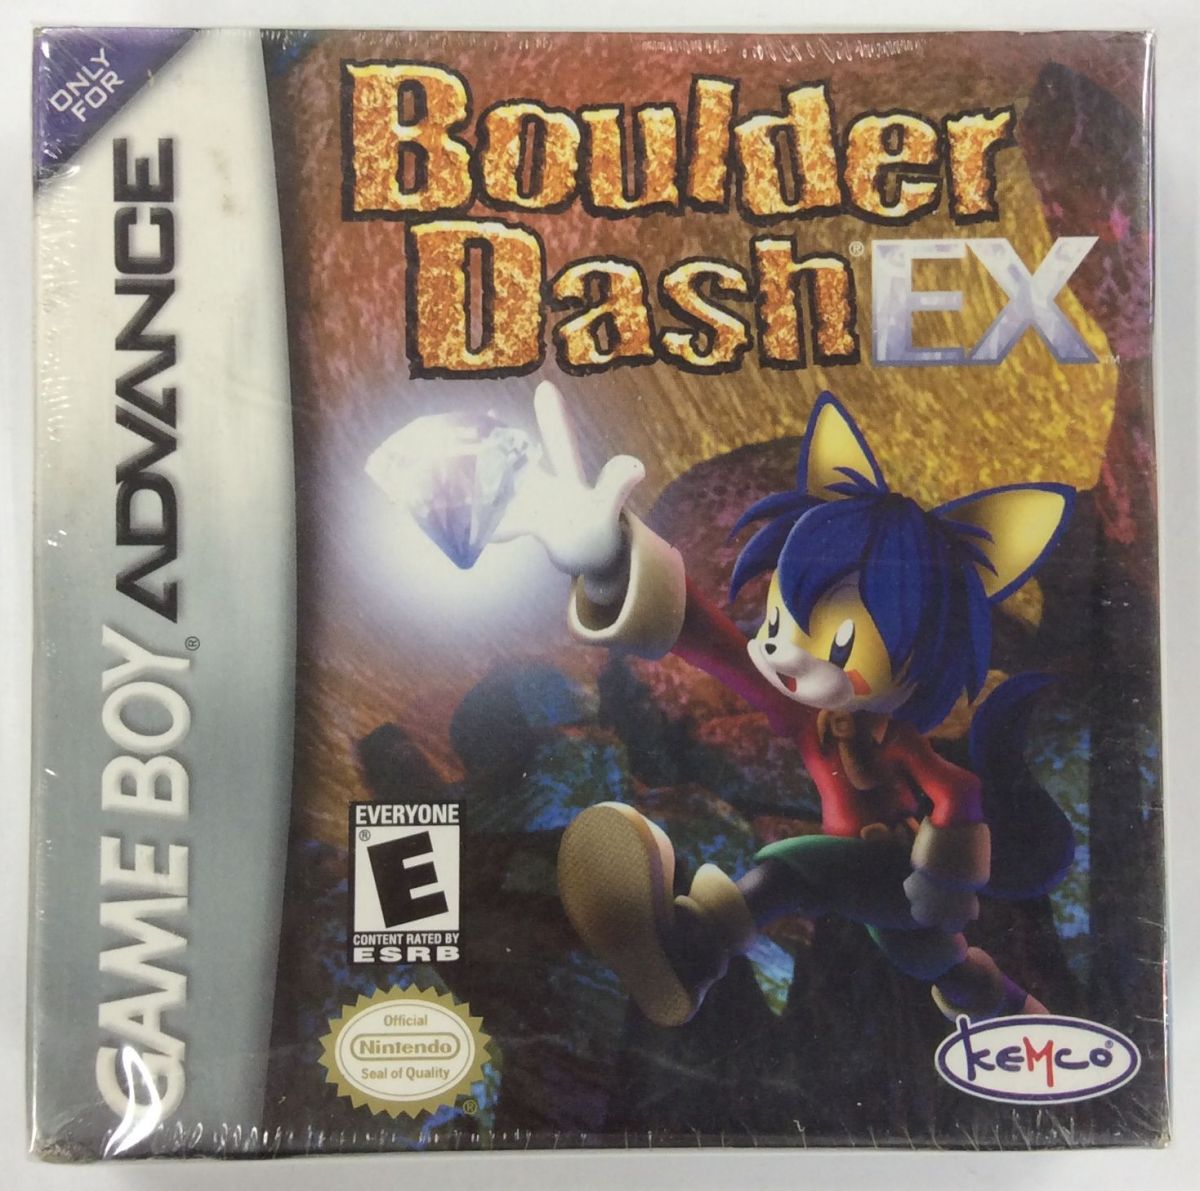 【中古】GBA BOULDER DASH EX - GBA [Game Boy Advance]＊ゲームボーイアドバンスソフト